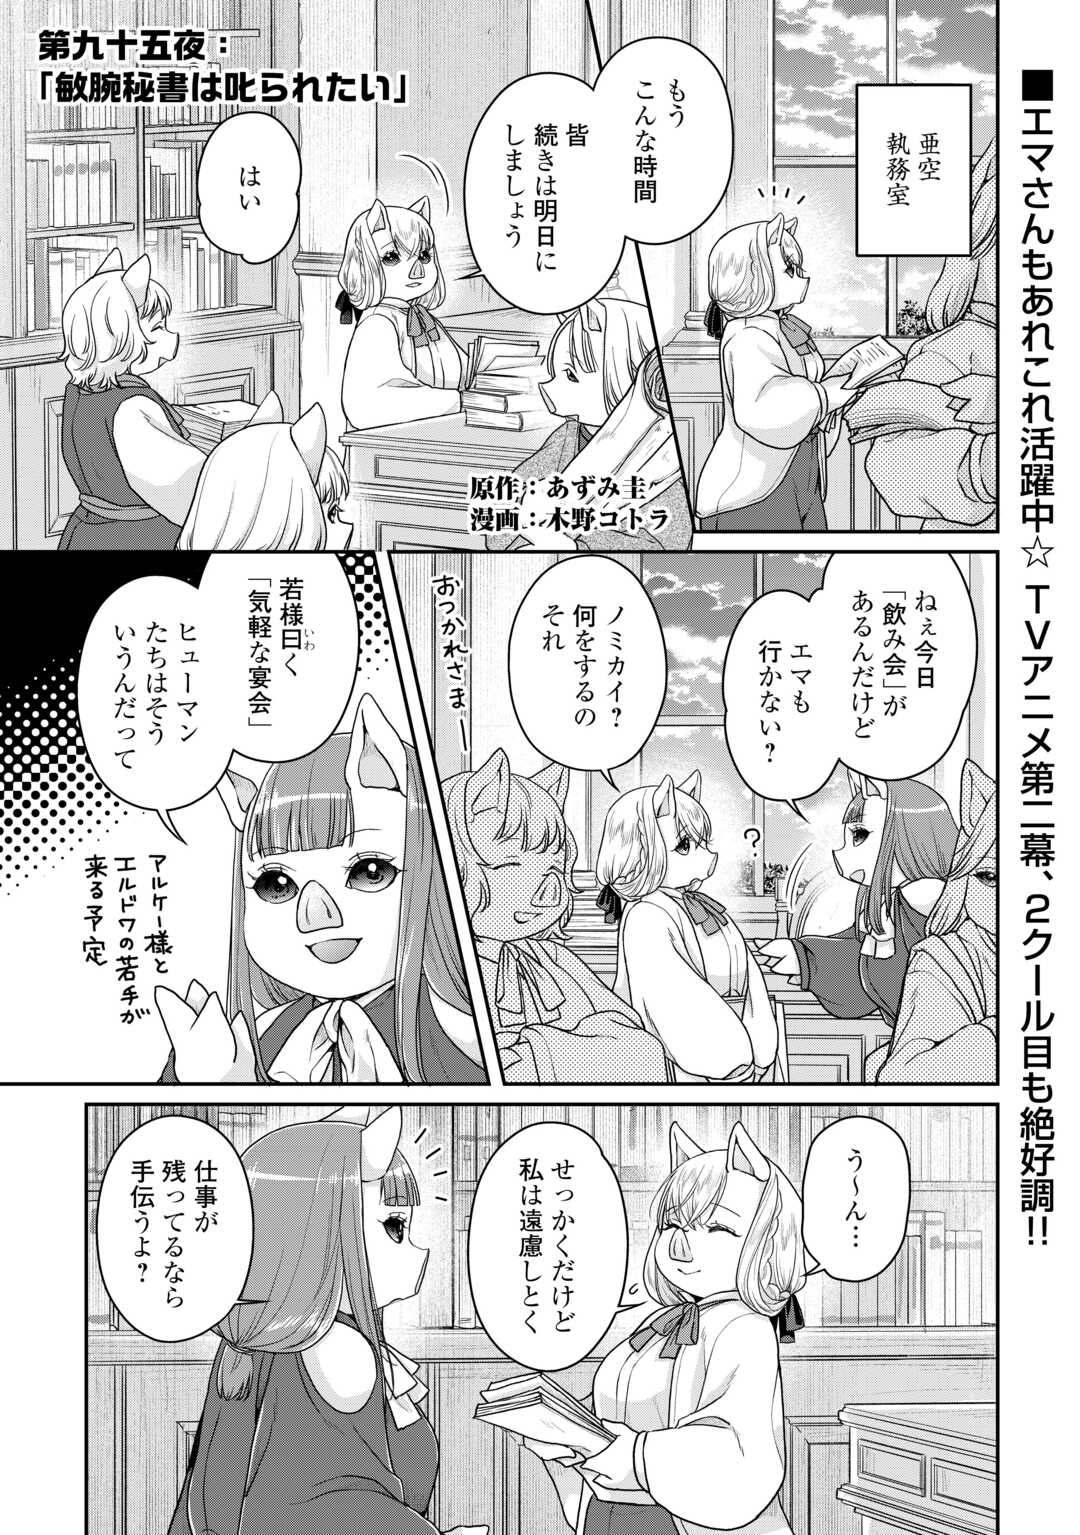 Tsuki ga Michibiku Isekai Douchuu - Chapter 95 - Page 1